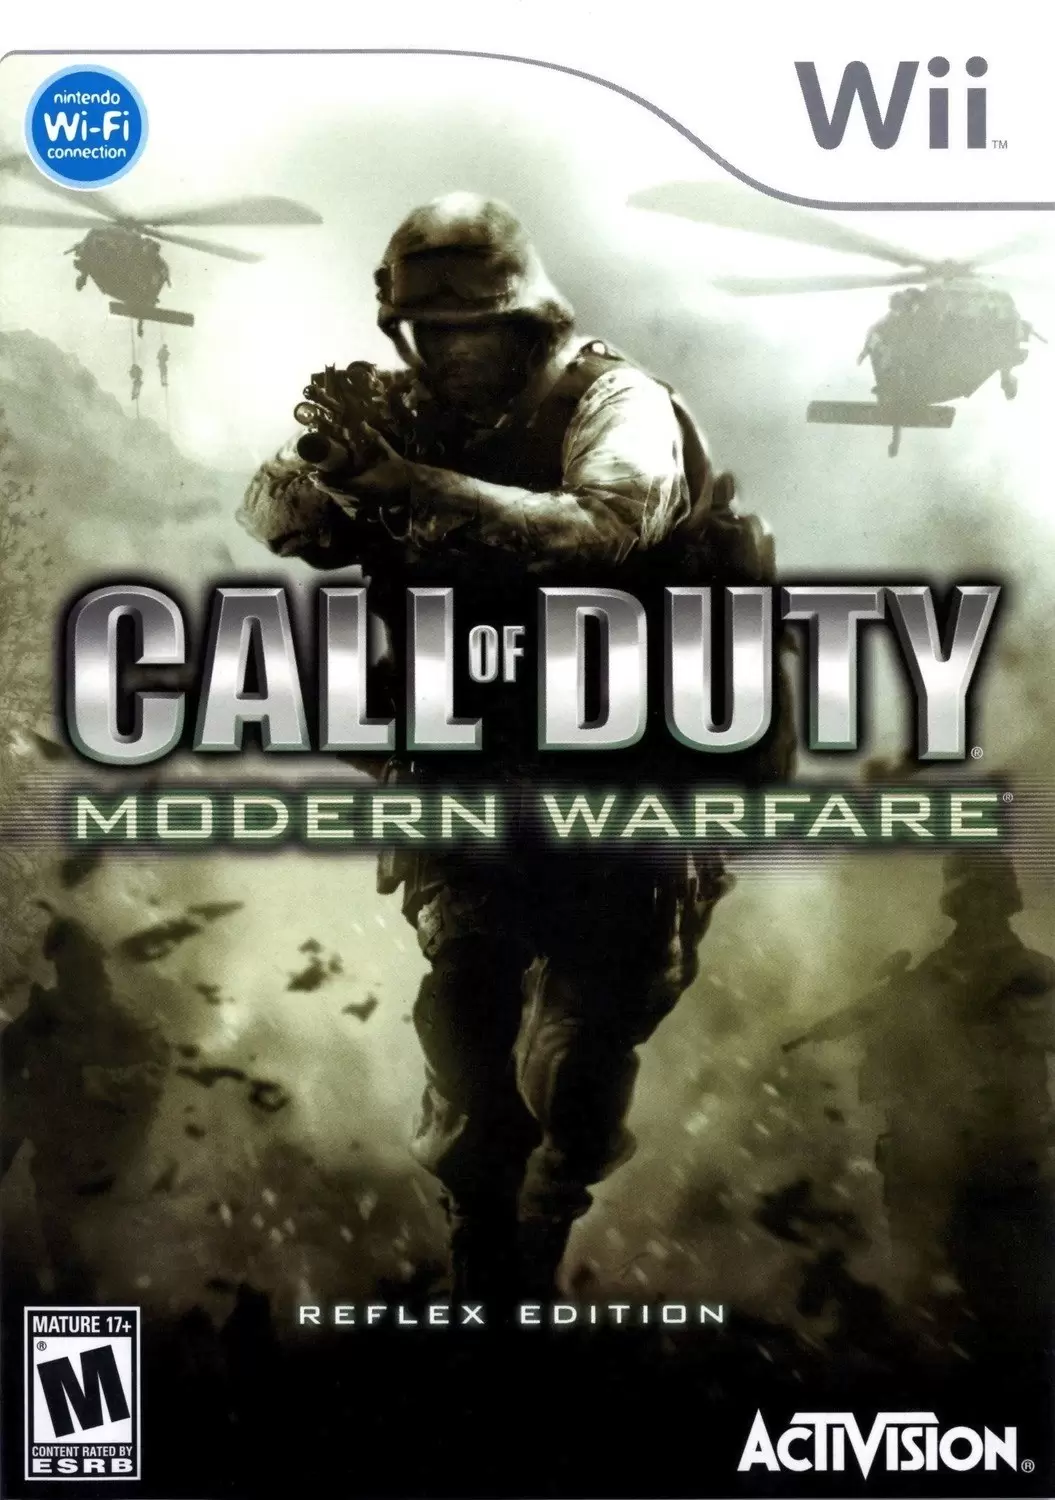 Nintendo Wii Games - Call of Duty: Modern Warfare - Reflex Edition